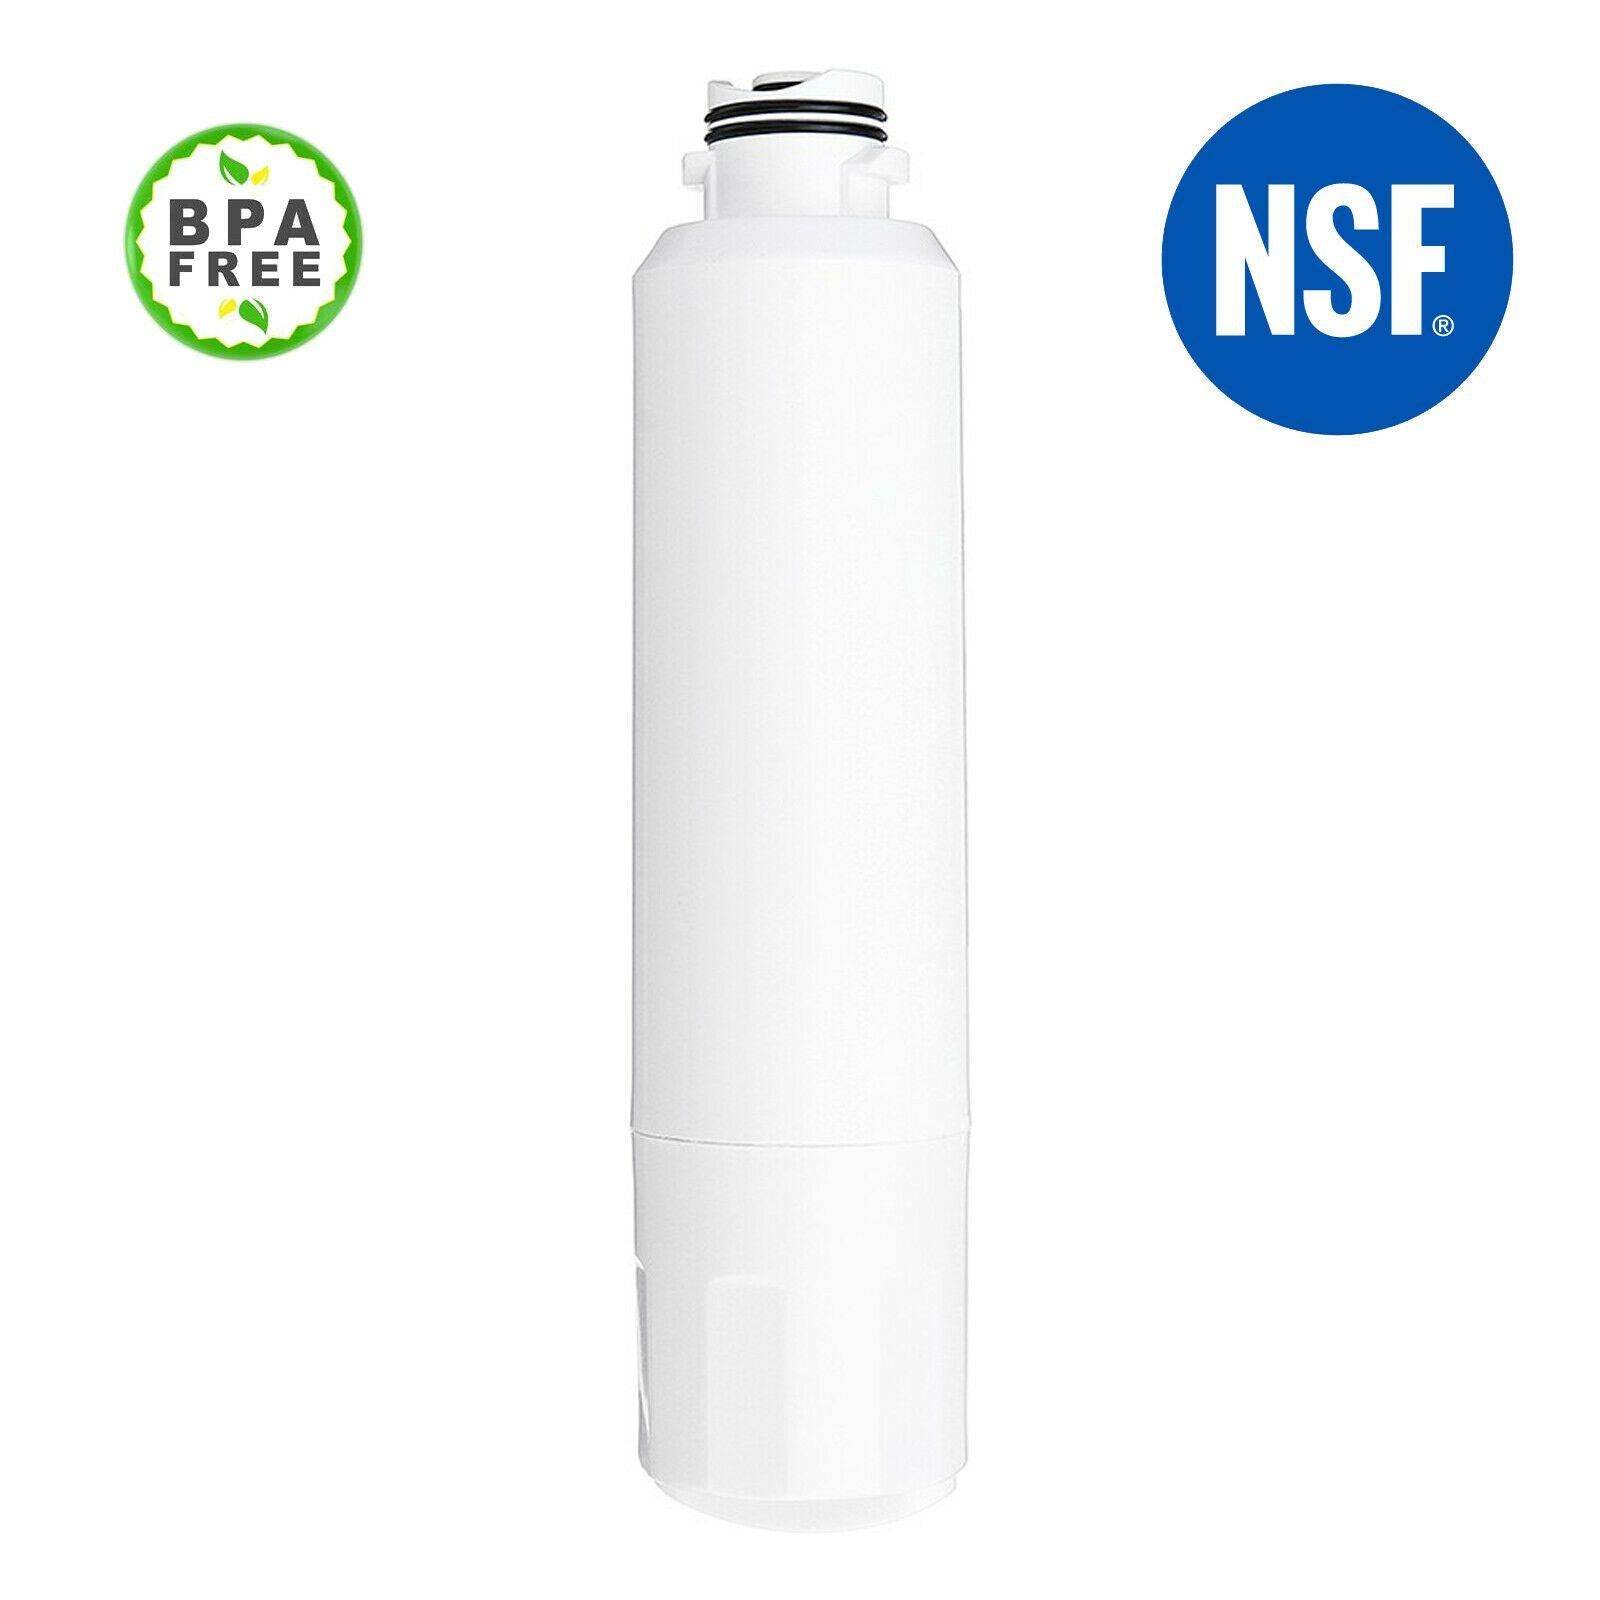 Refridgerator Water Filter For Samsung DA29-00020B-2 DA-97-08006B DA29-00019A Sparesbarn